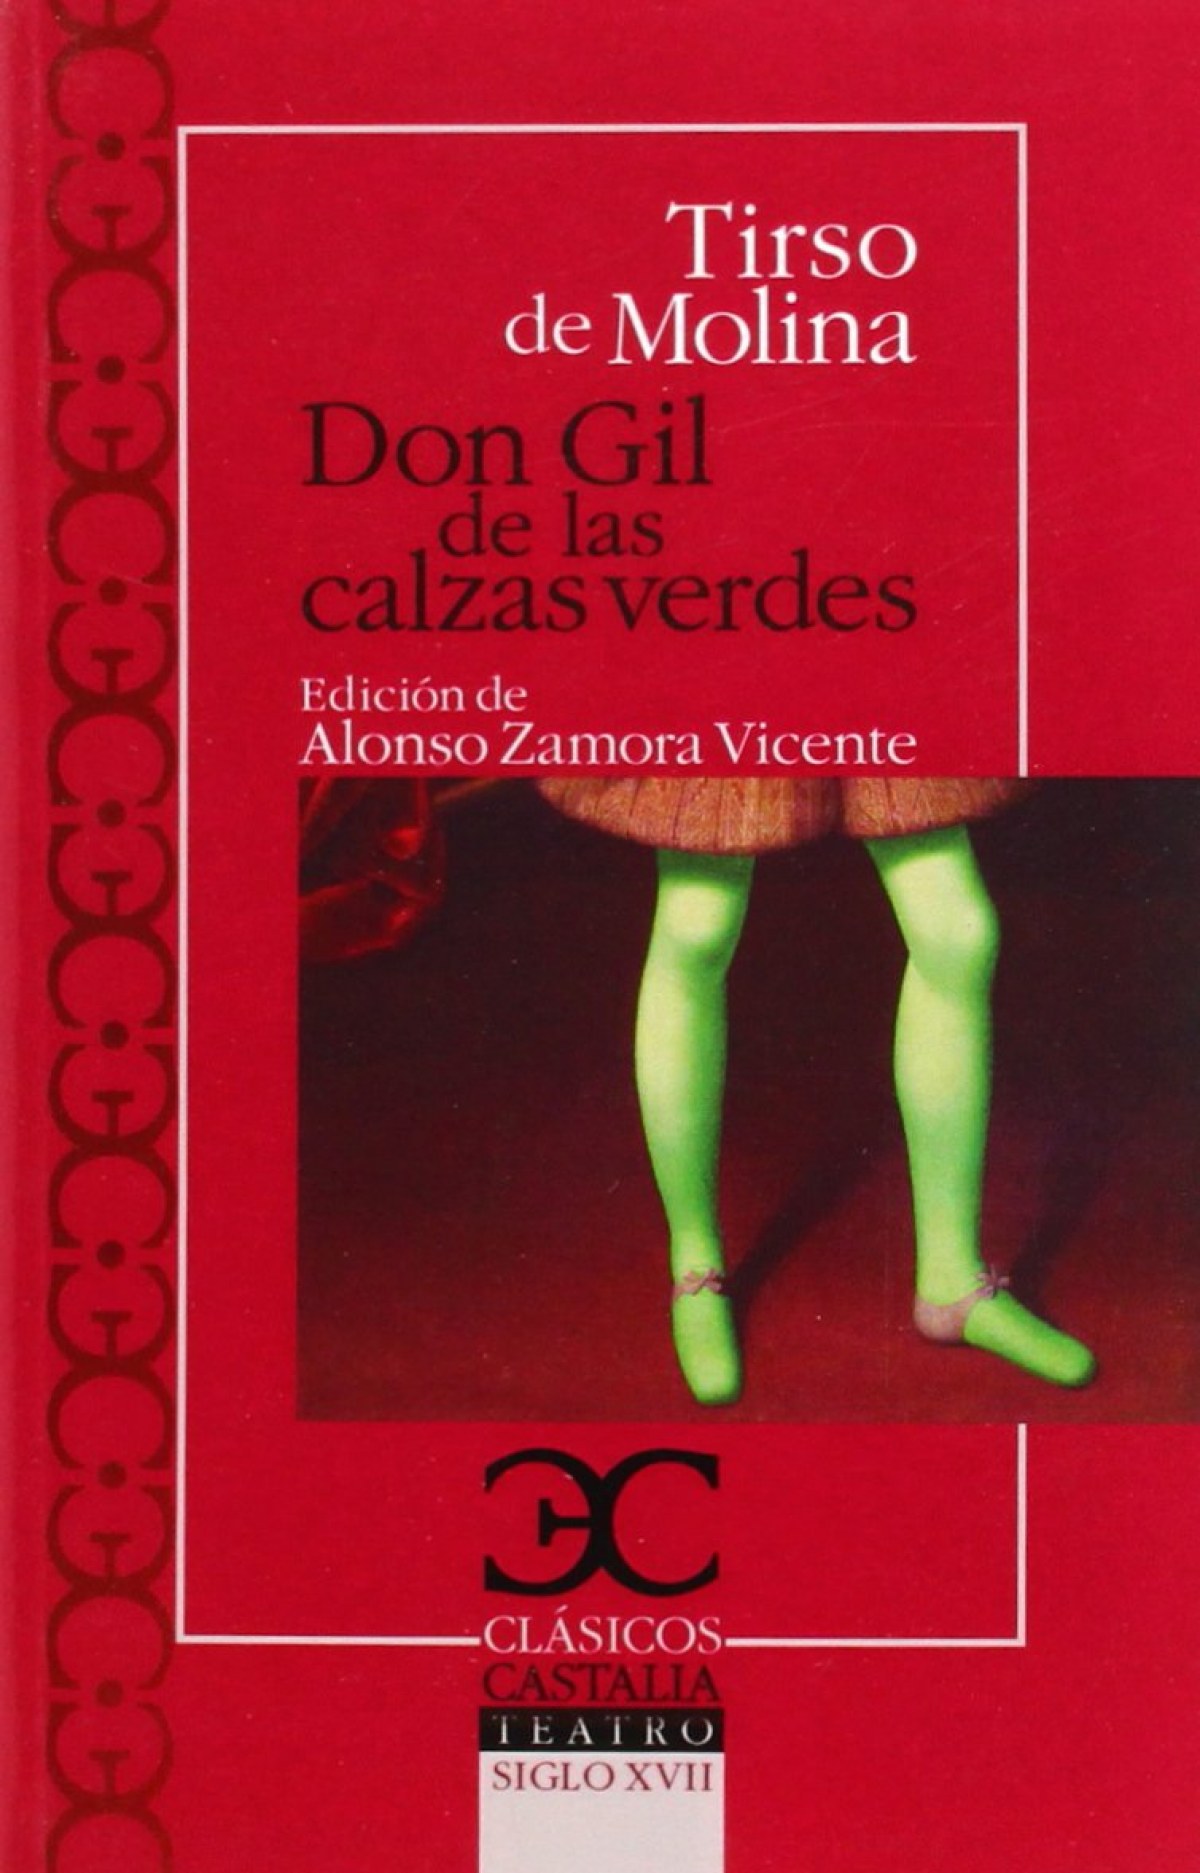 Don gil de las calzas verdes - De Molina,Tirso